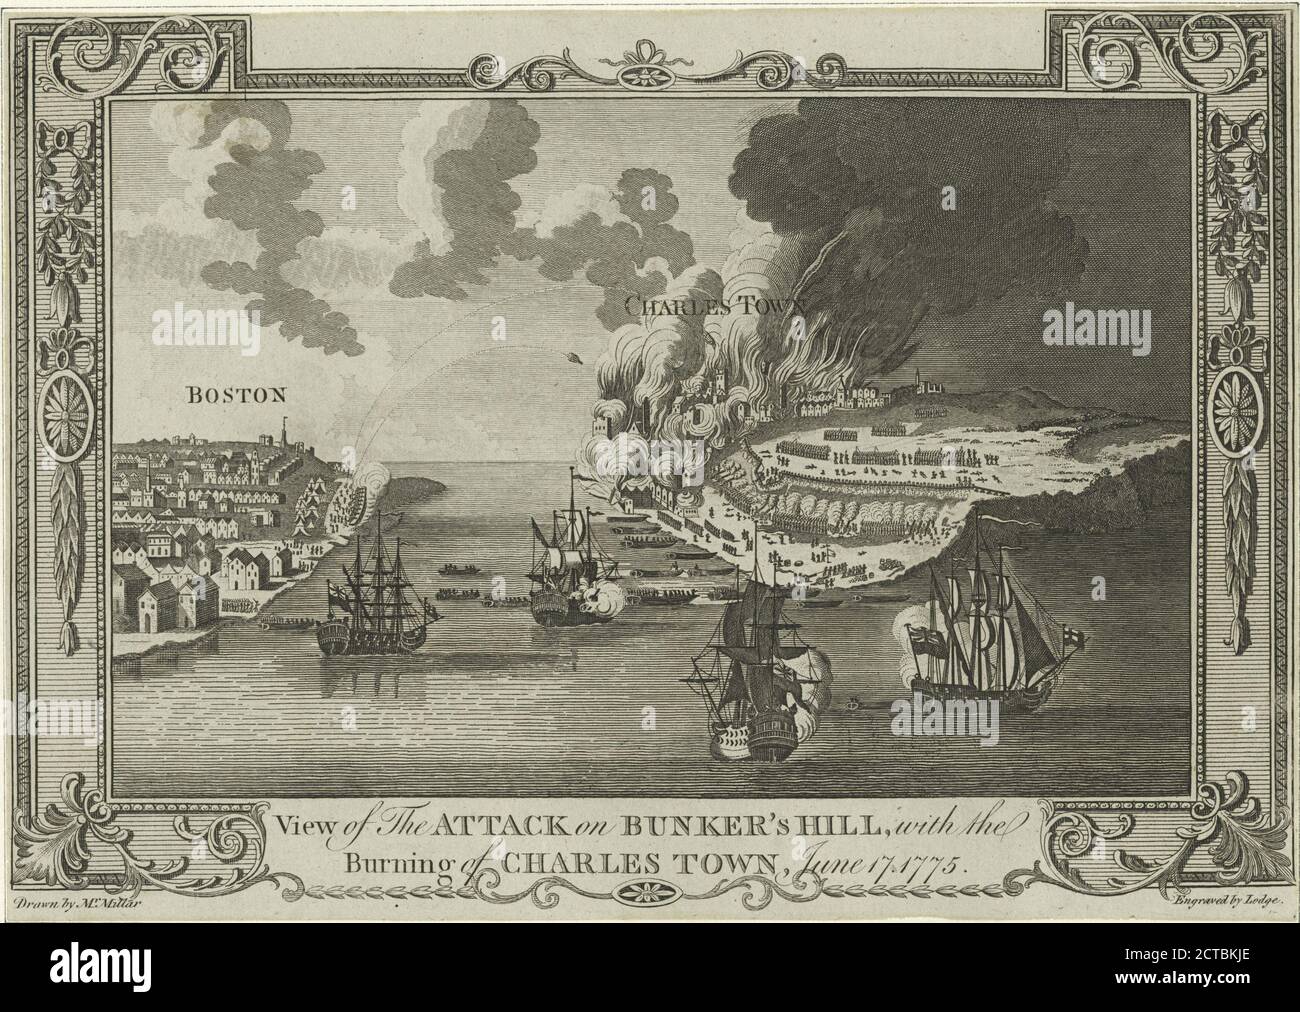 Vue de l'attaque sur Bunker's Hill, avec l'incendie de Charles Town, 17 juin 1775, image fixe, 1776 - 1890 Banque D'Images